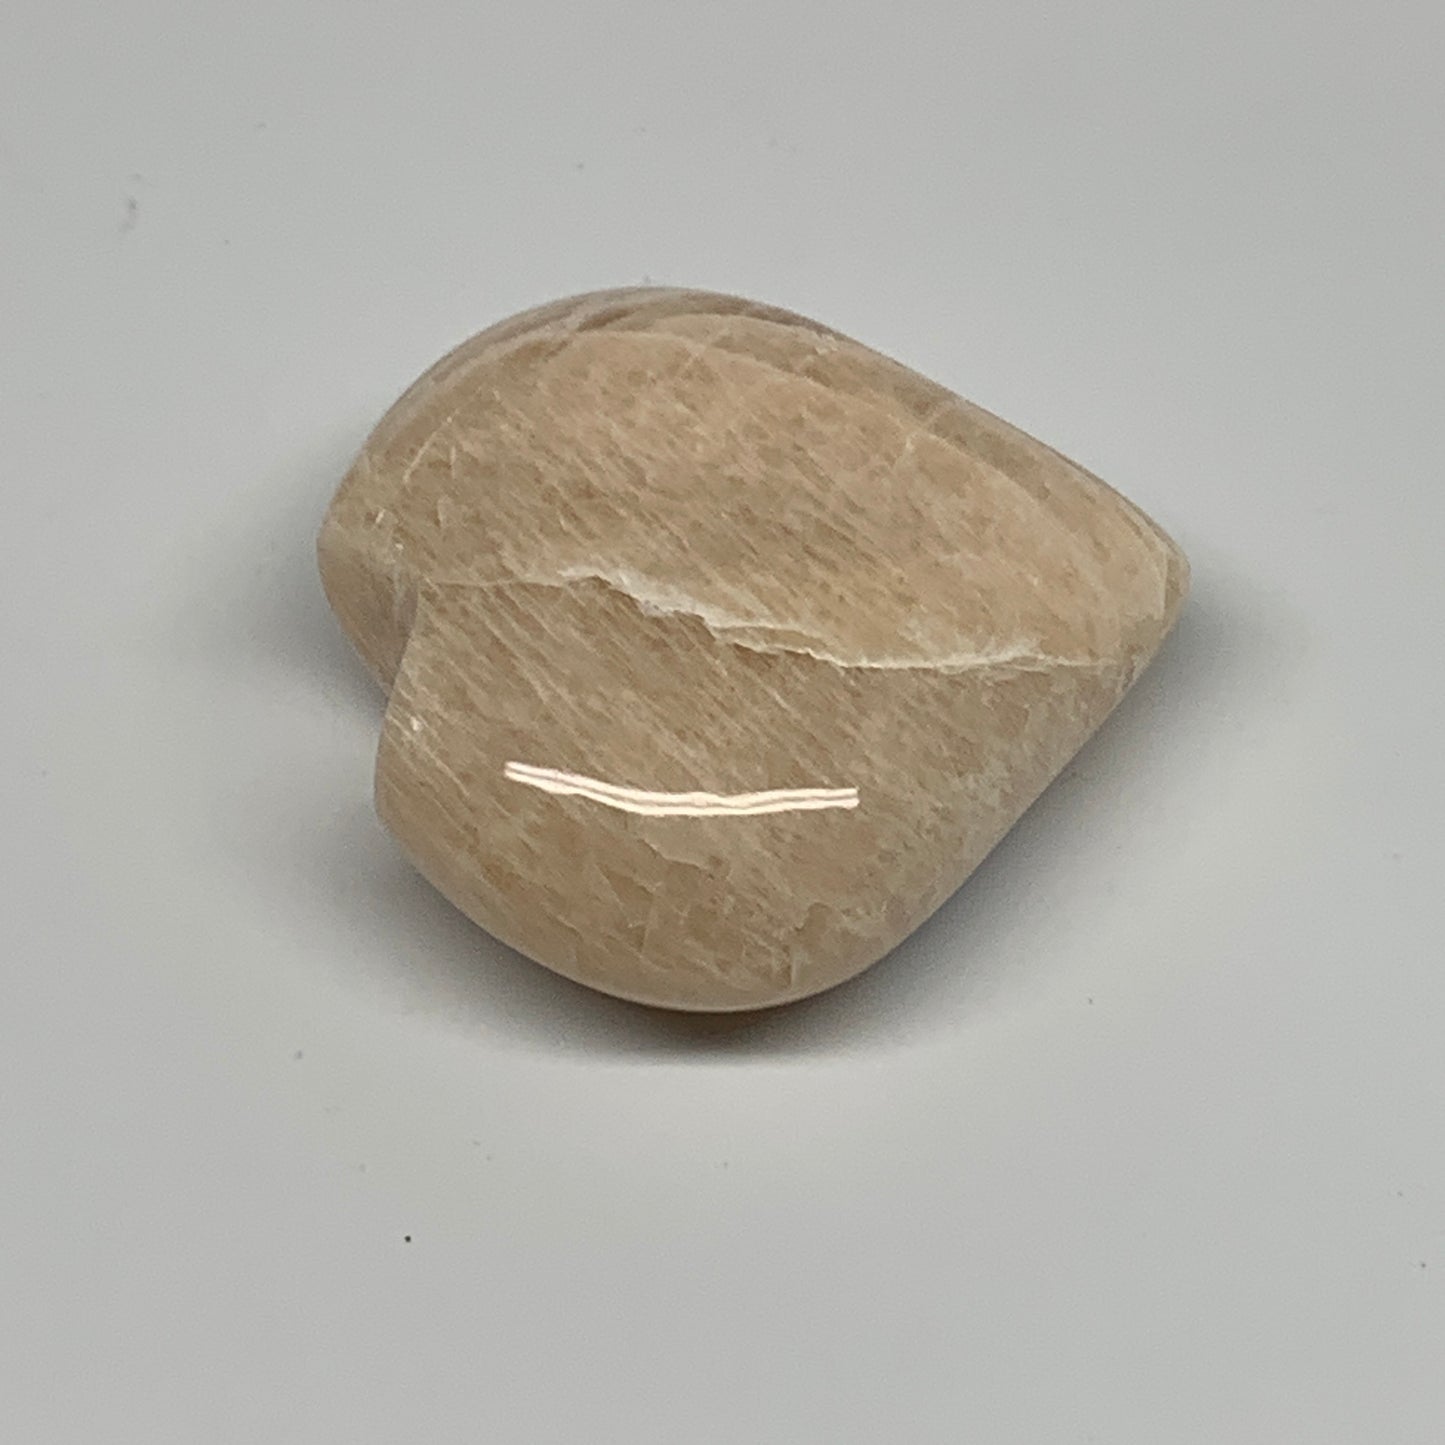 84.4g, 2.1"x2.2"x0.9", Peach Moonstone Heart Crystal Polished Gemstone, B28108